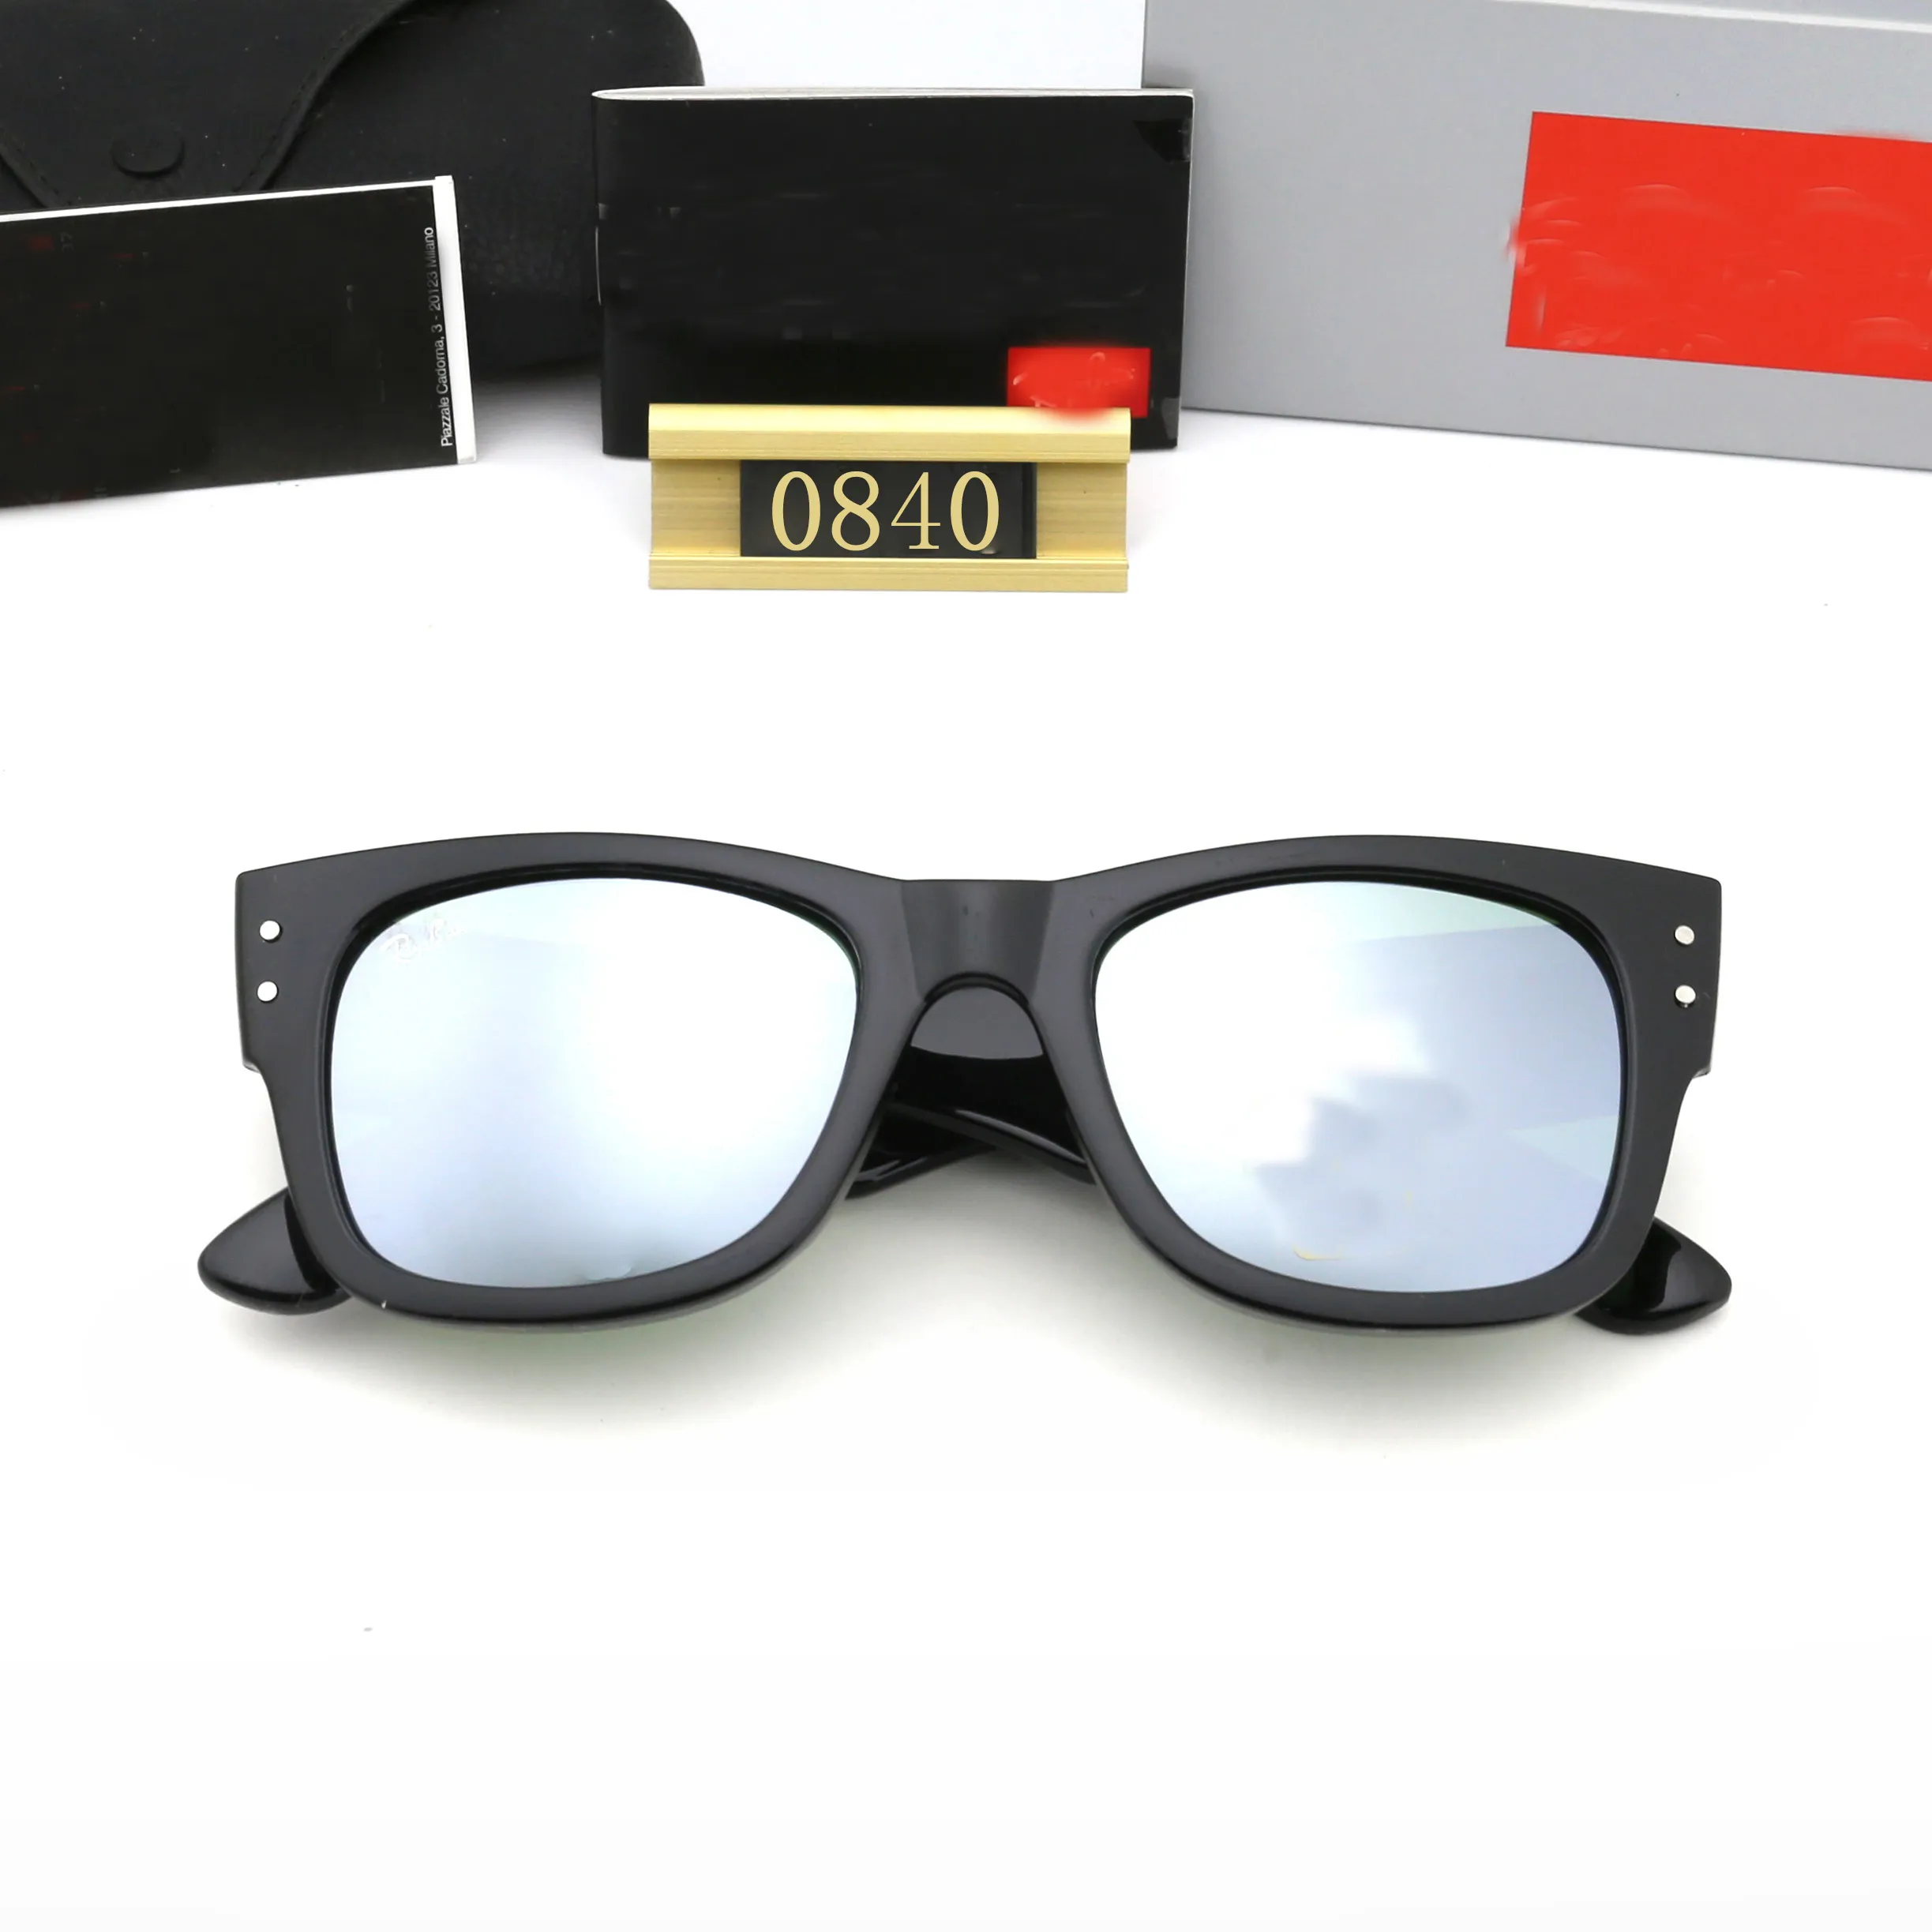 Мужские солнцезащитные очки мужчины мода на открытое открытое классическое стиль очки Unisex Goggles Polarizing Sport вождение множественные оттенки стиля